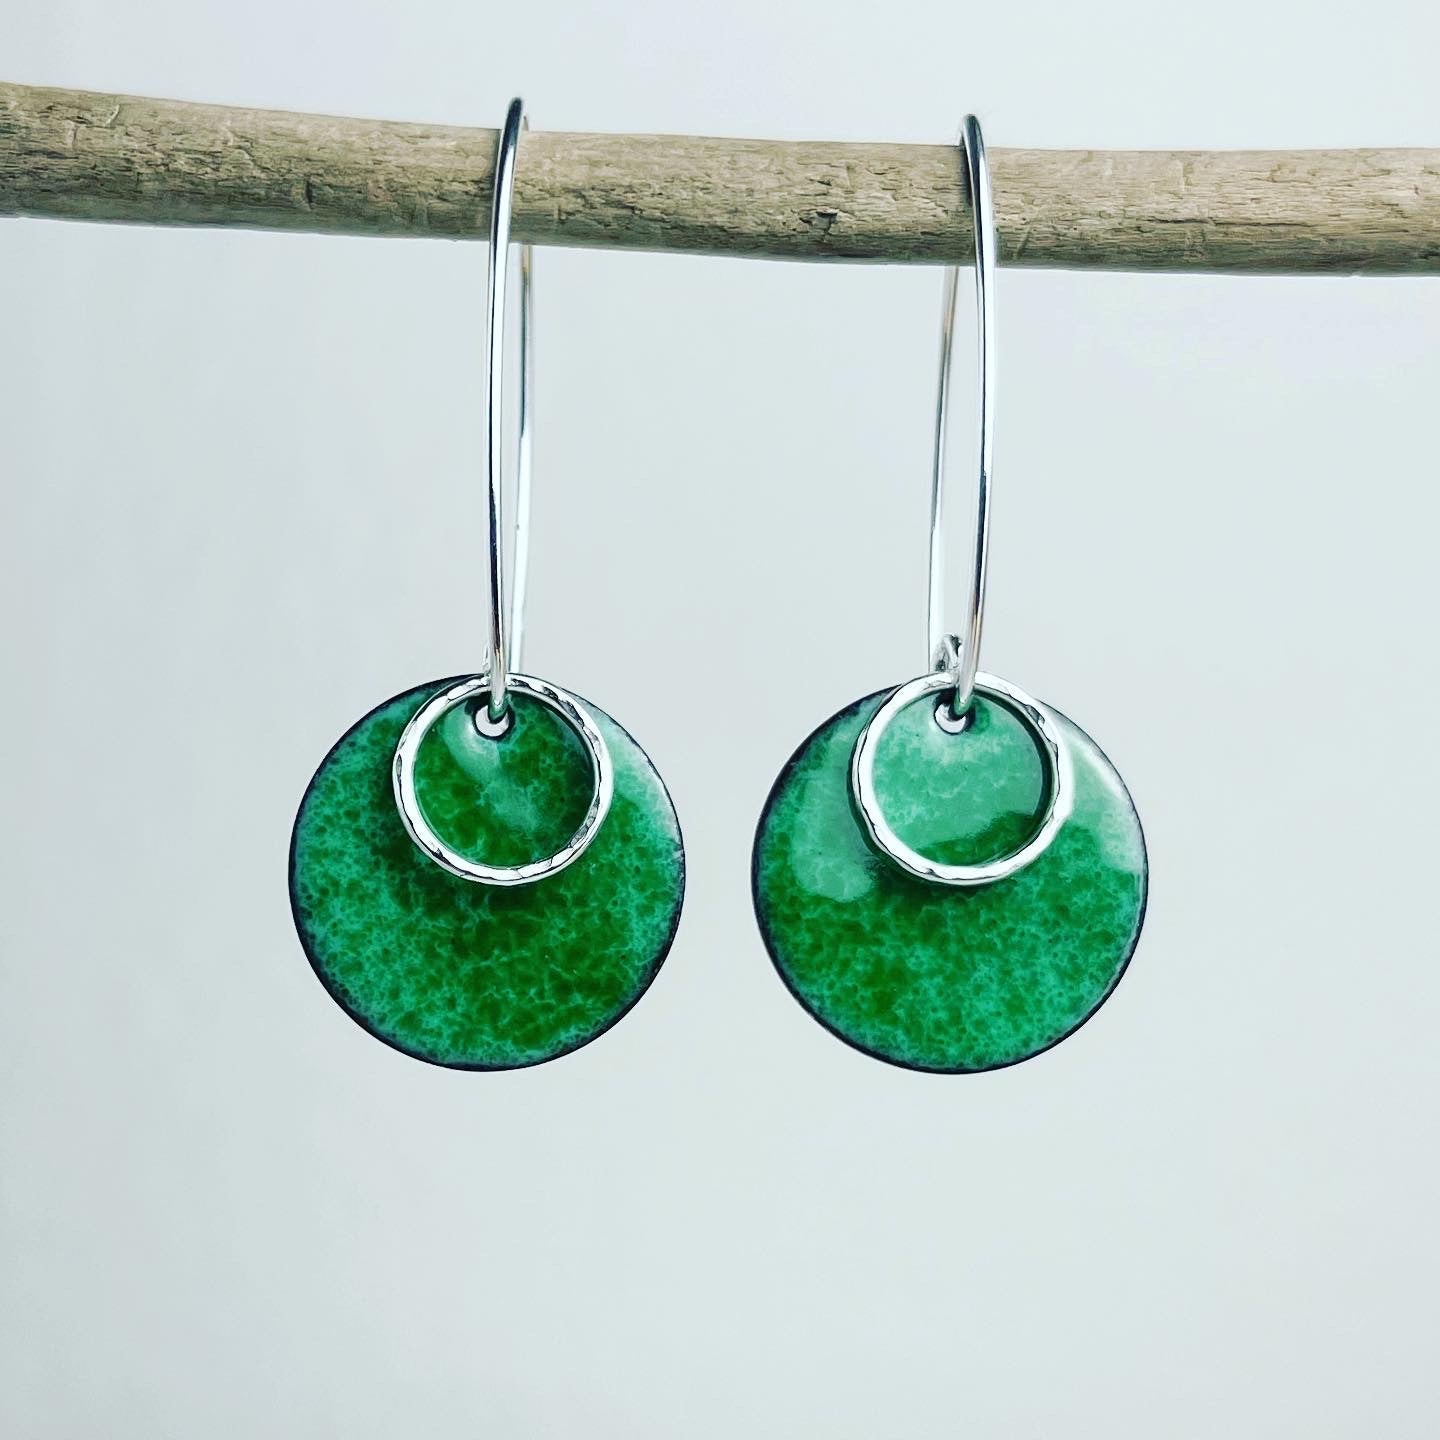 Grass Green Enamel Disc Earrings - The Nancy Smillie Shop - Art, Jewellery & Designer Gifts Glasgow